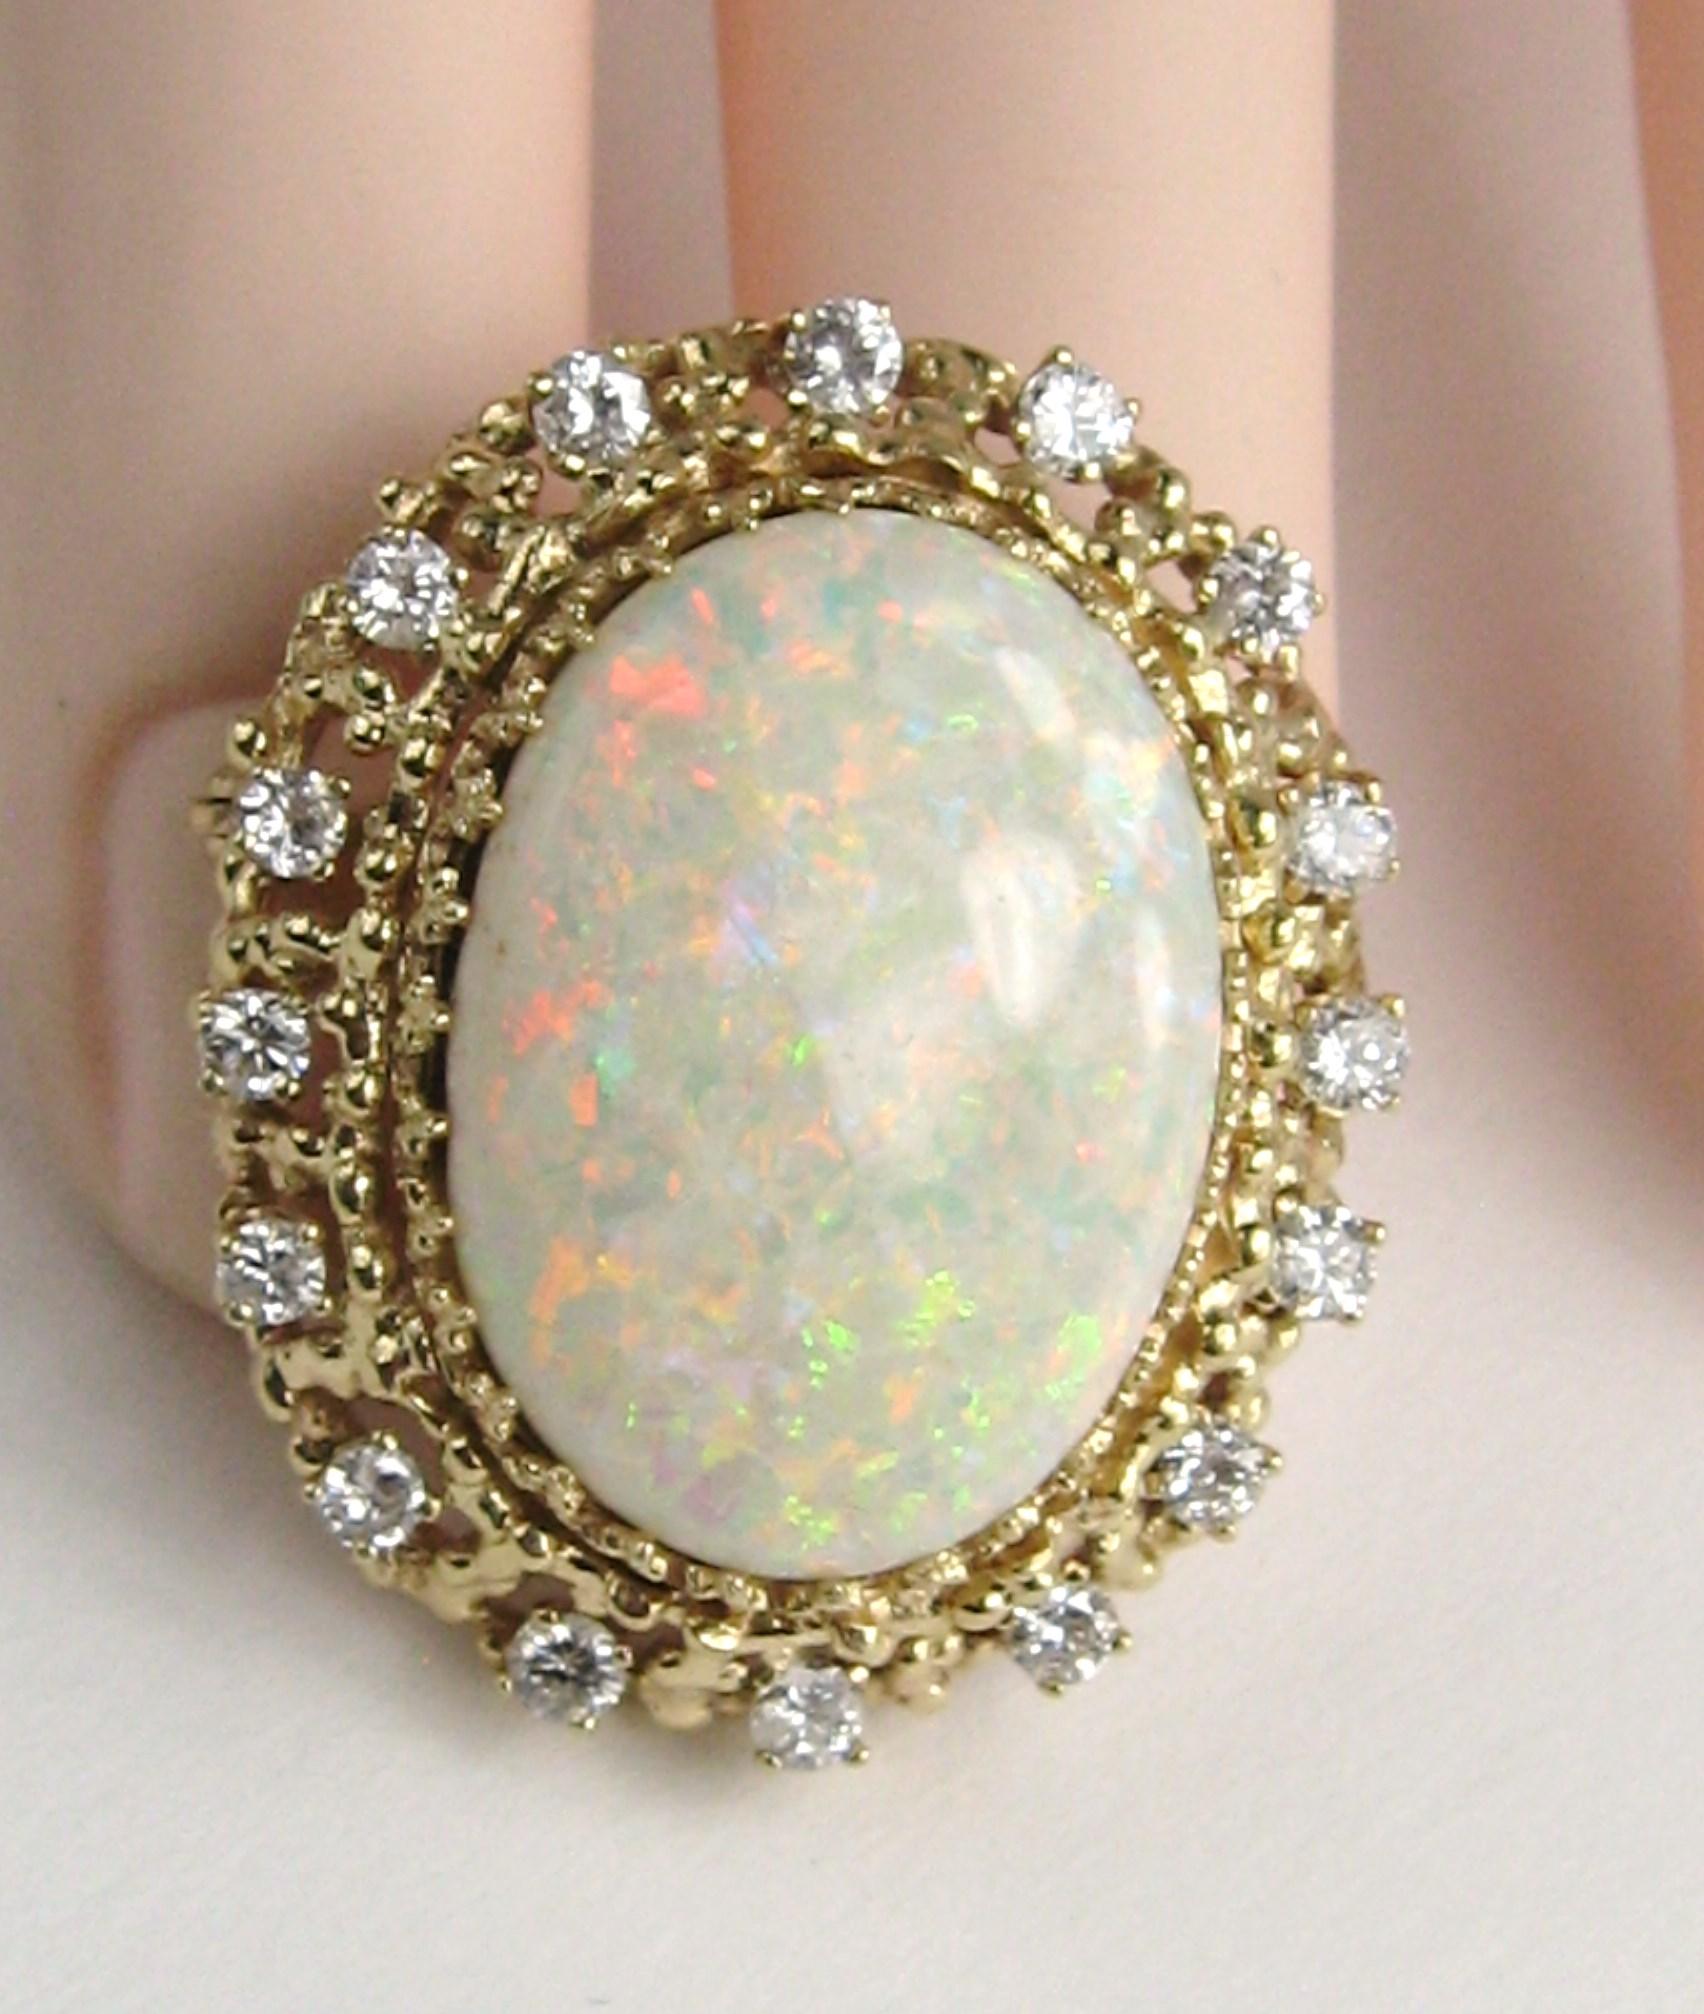 broche/pendentif en or 14 carats avec opale centrale de 13 carats et plus. 16 diamants sertis en fourchette entourent cette opale massive. L'opale mesure 23,2 mm x 17,4 mm . Le pendentif mesure 1,30 in. x 1,07 in. Il a 1 carat de diamants. Ce